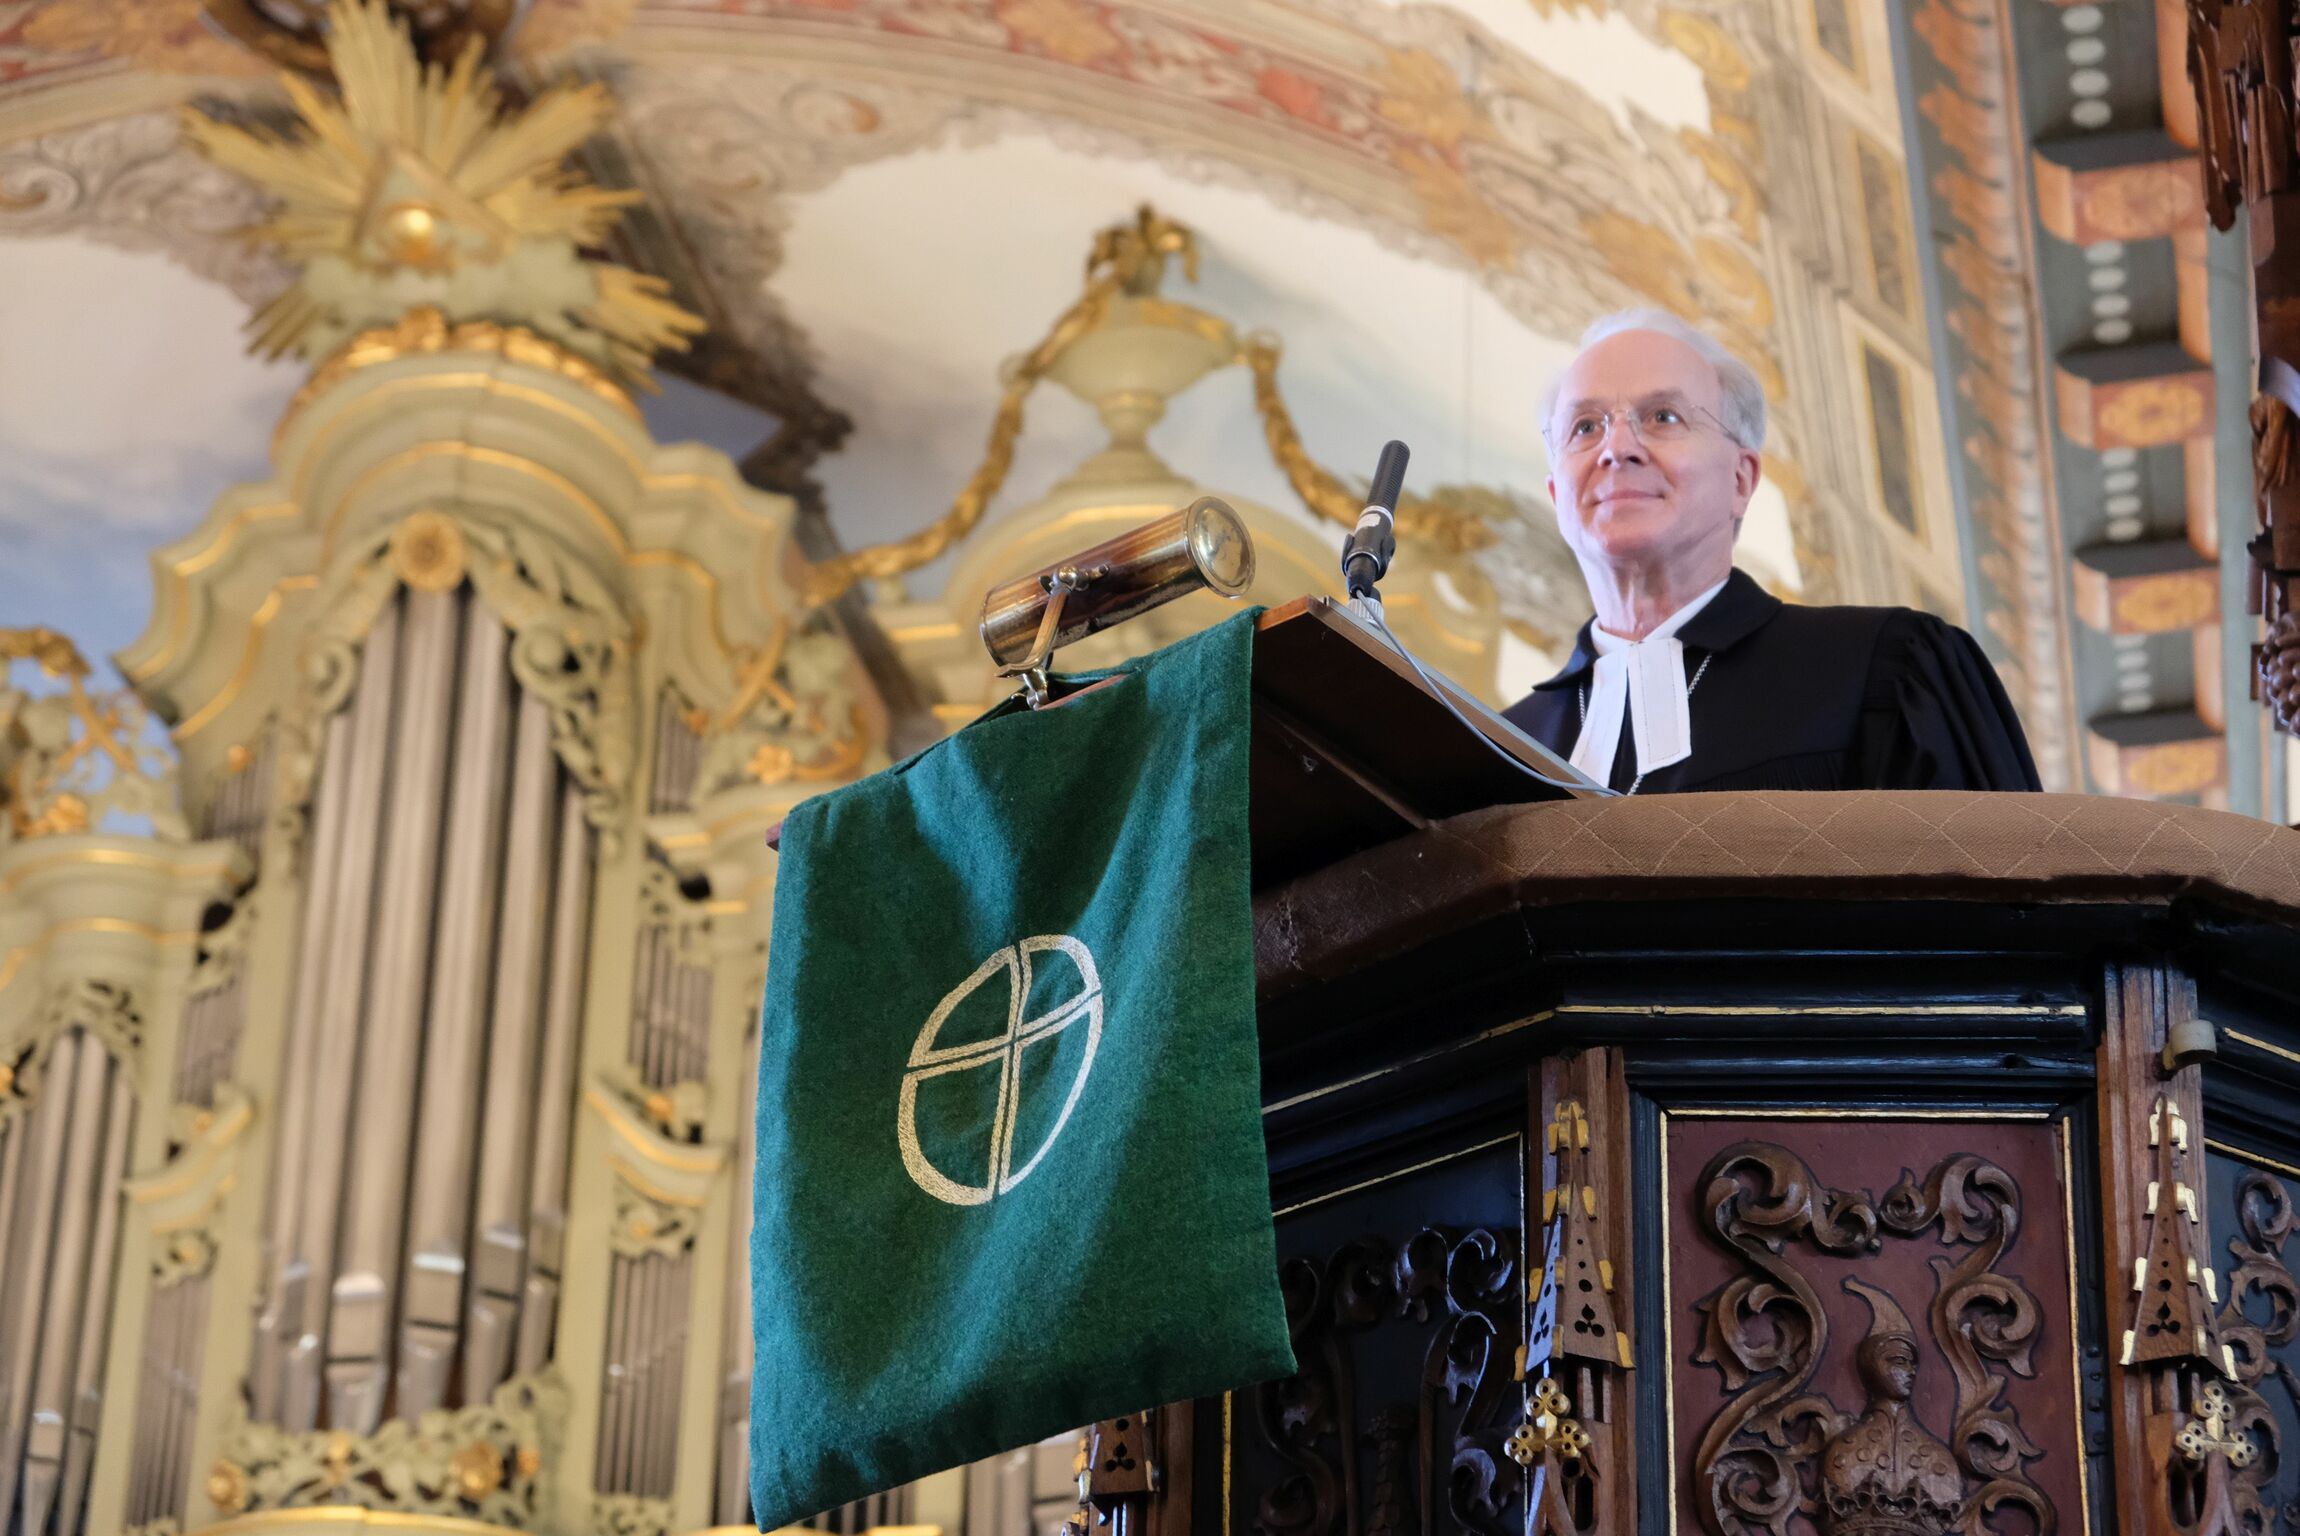  Regionalbischof Dr. Detlef Klahr hielt die Predigt im Abschiedsgottesdienst von Kirchenmusikdirektor Joachim Gehrold in der Lutherkirche in Leer die Predigt.